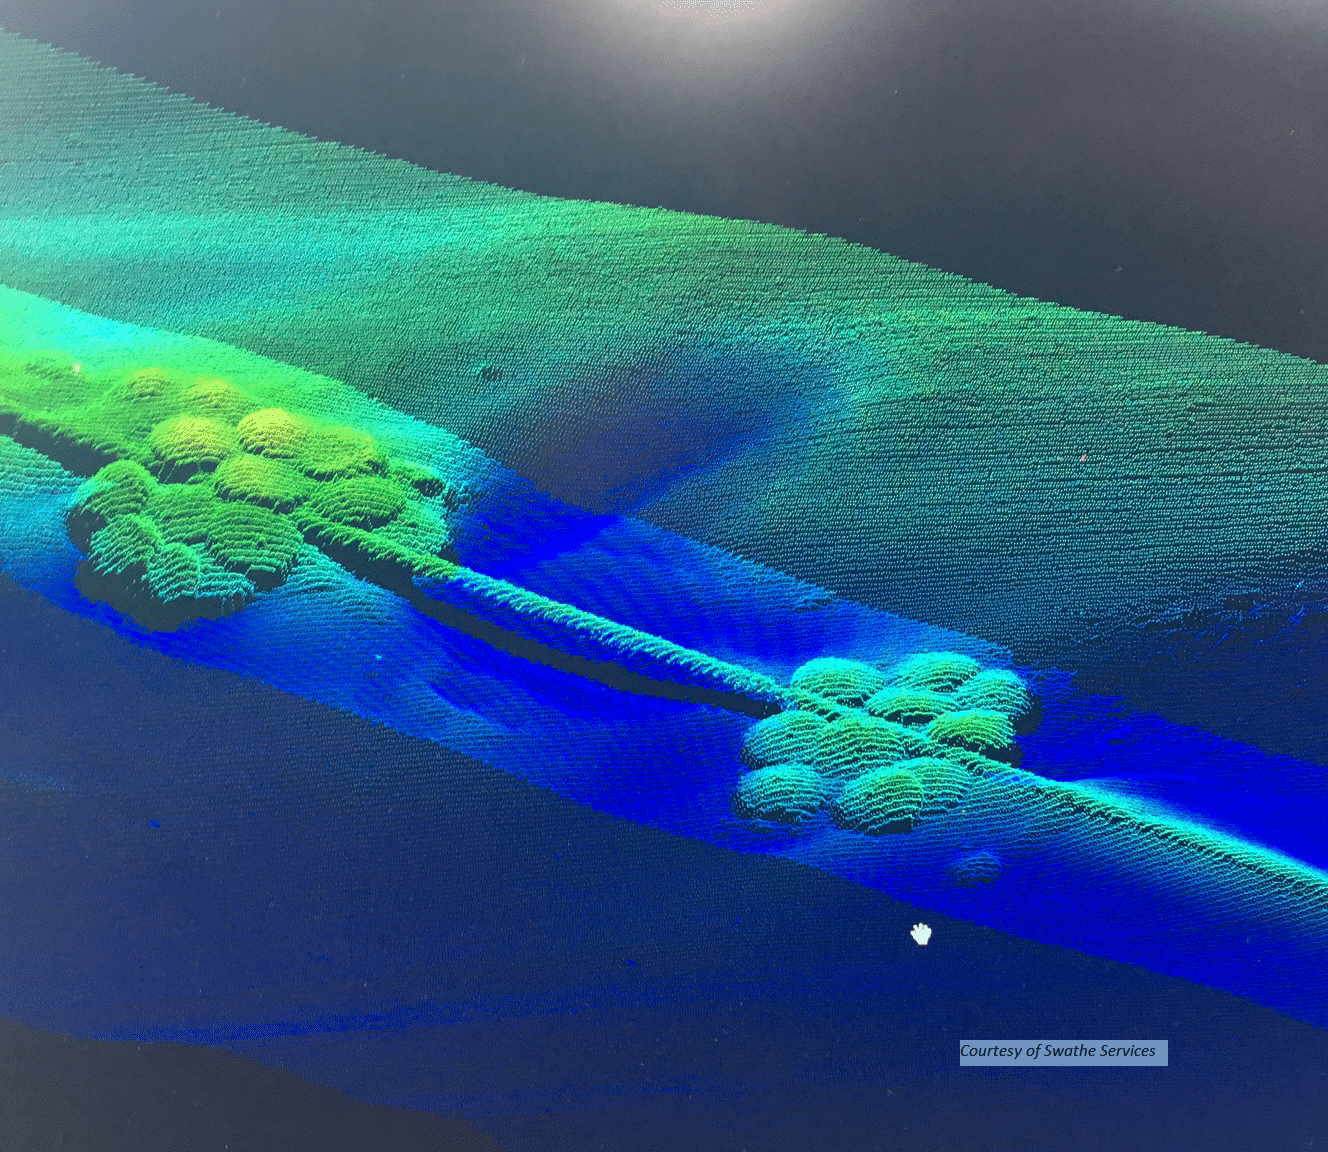 multibeam sonar scanned image of an underwater pipeline